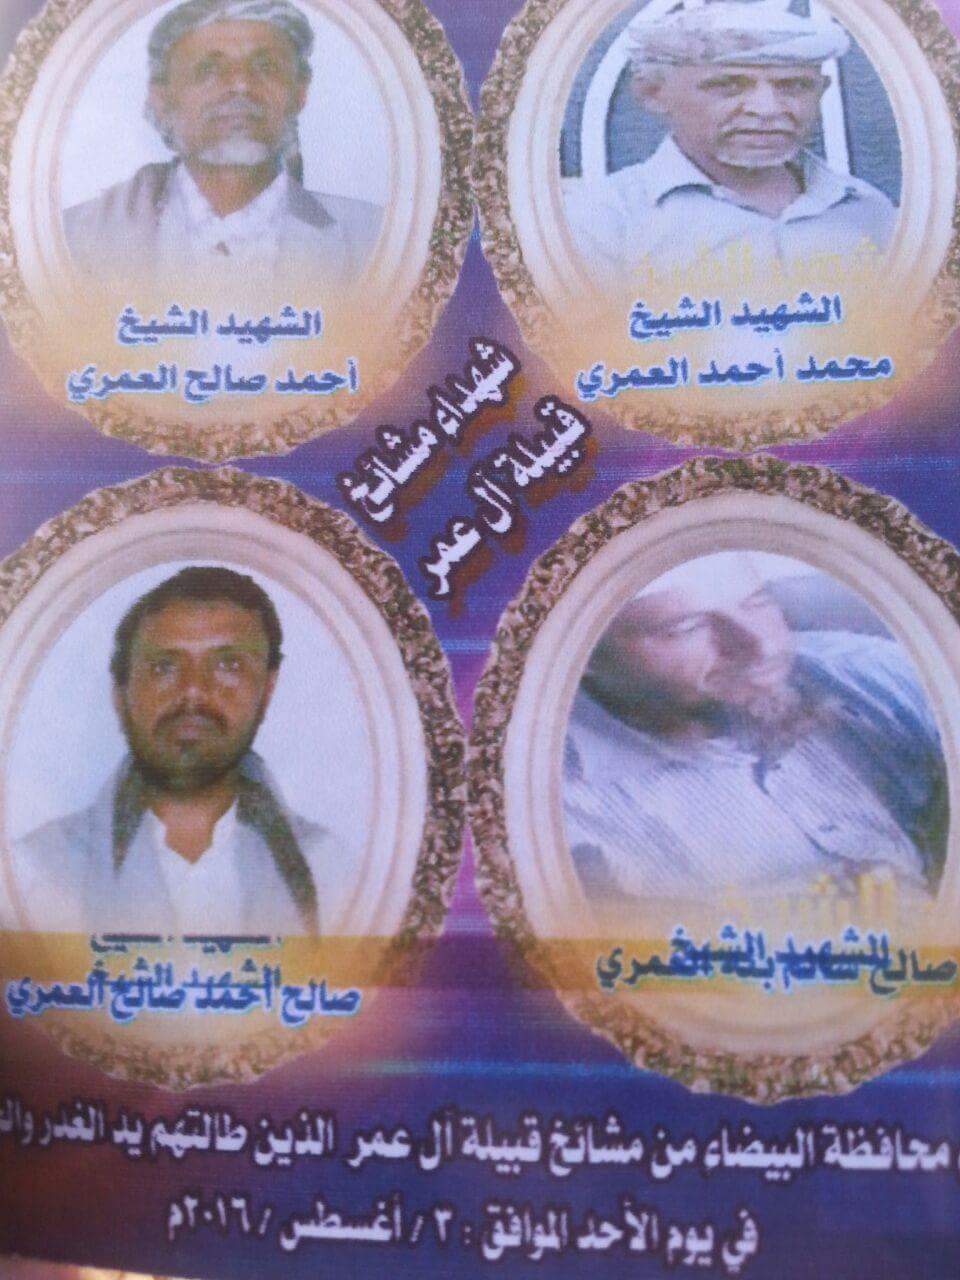 البيضاء: تشييع جثامين مشائخ "آل عمر" الذين أعدمتهم مليشيا الحوثي قبل خمسة اشهر